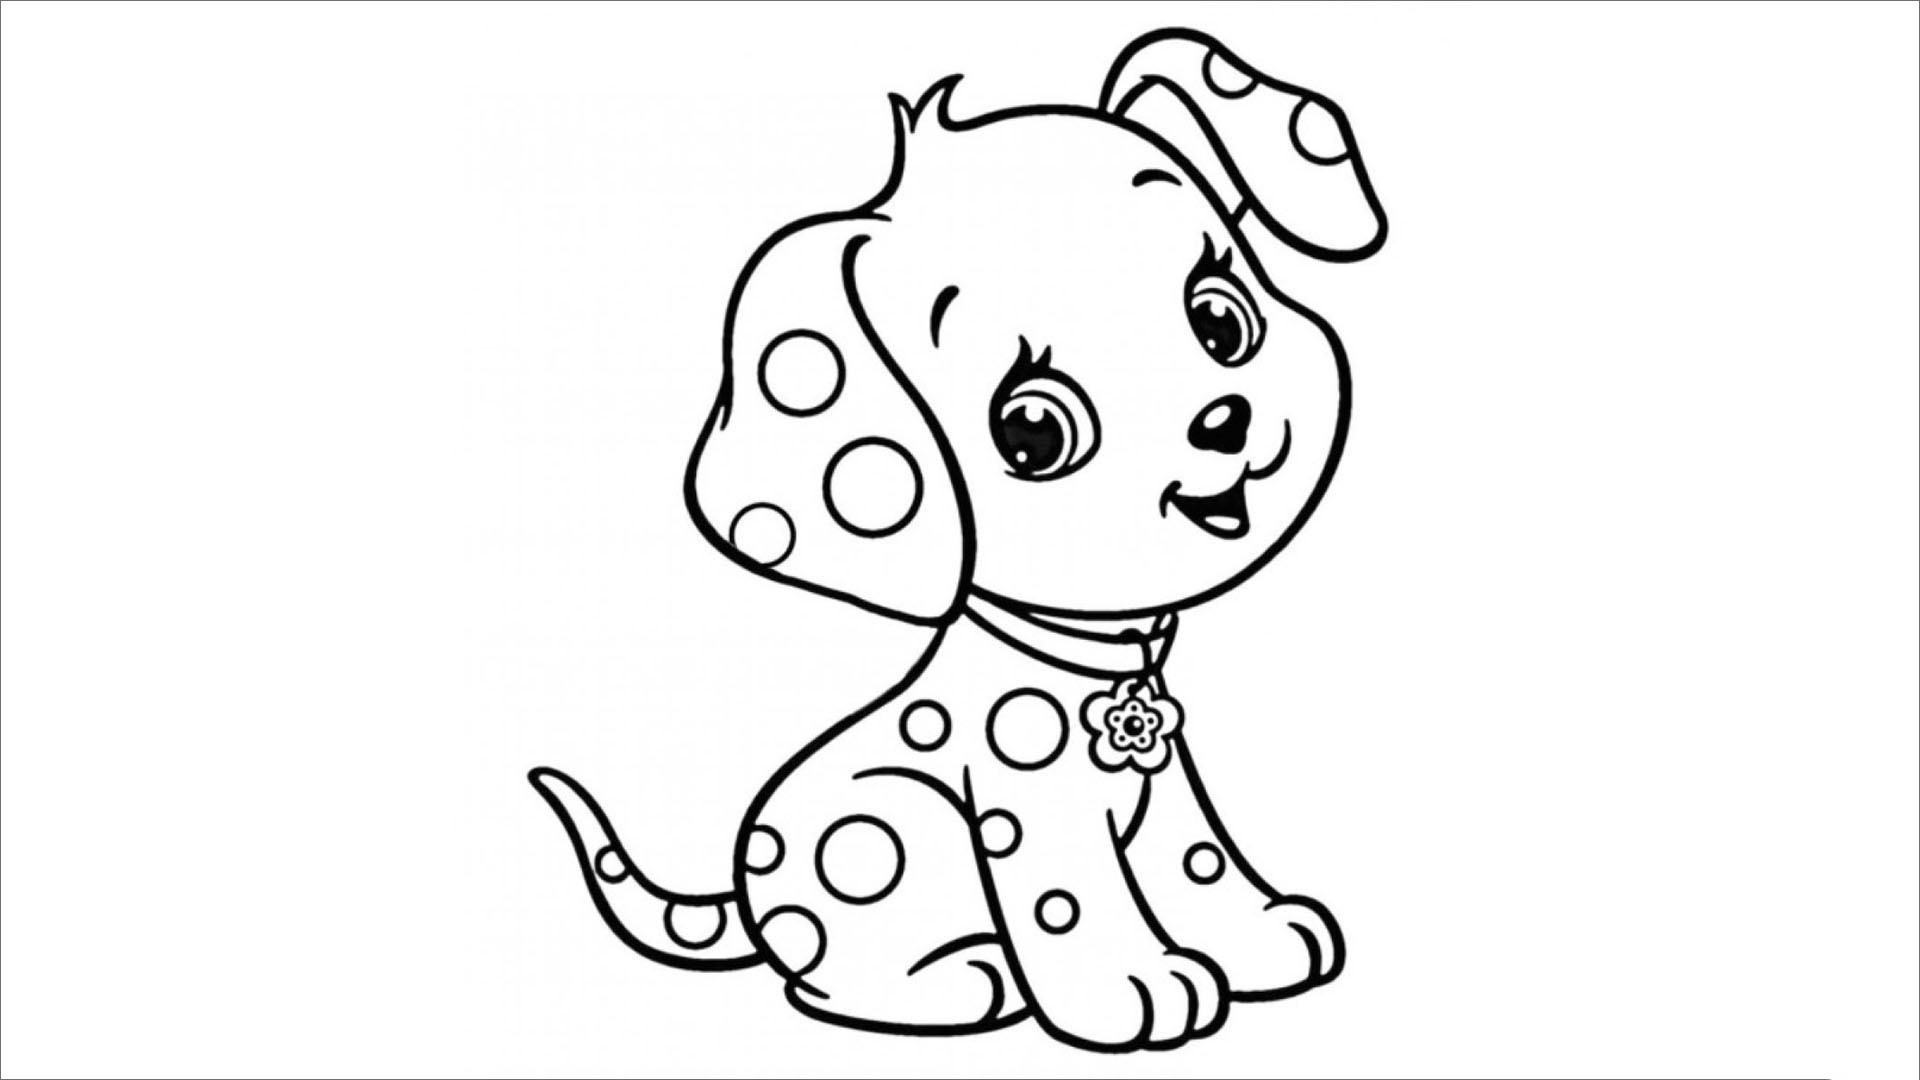 Cách dễ nhất để vẽ một con chó Mẫu hình vẽ con chó cute đẹp nhất  Kênh  Văn Hay